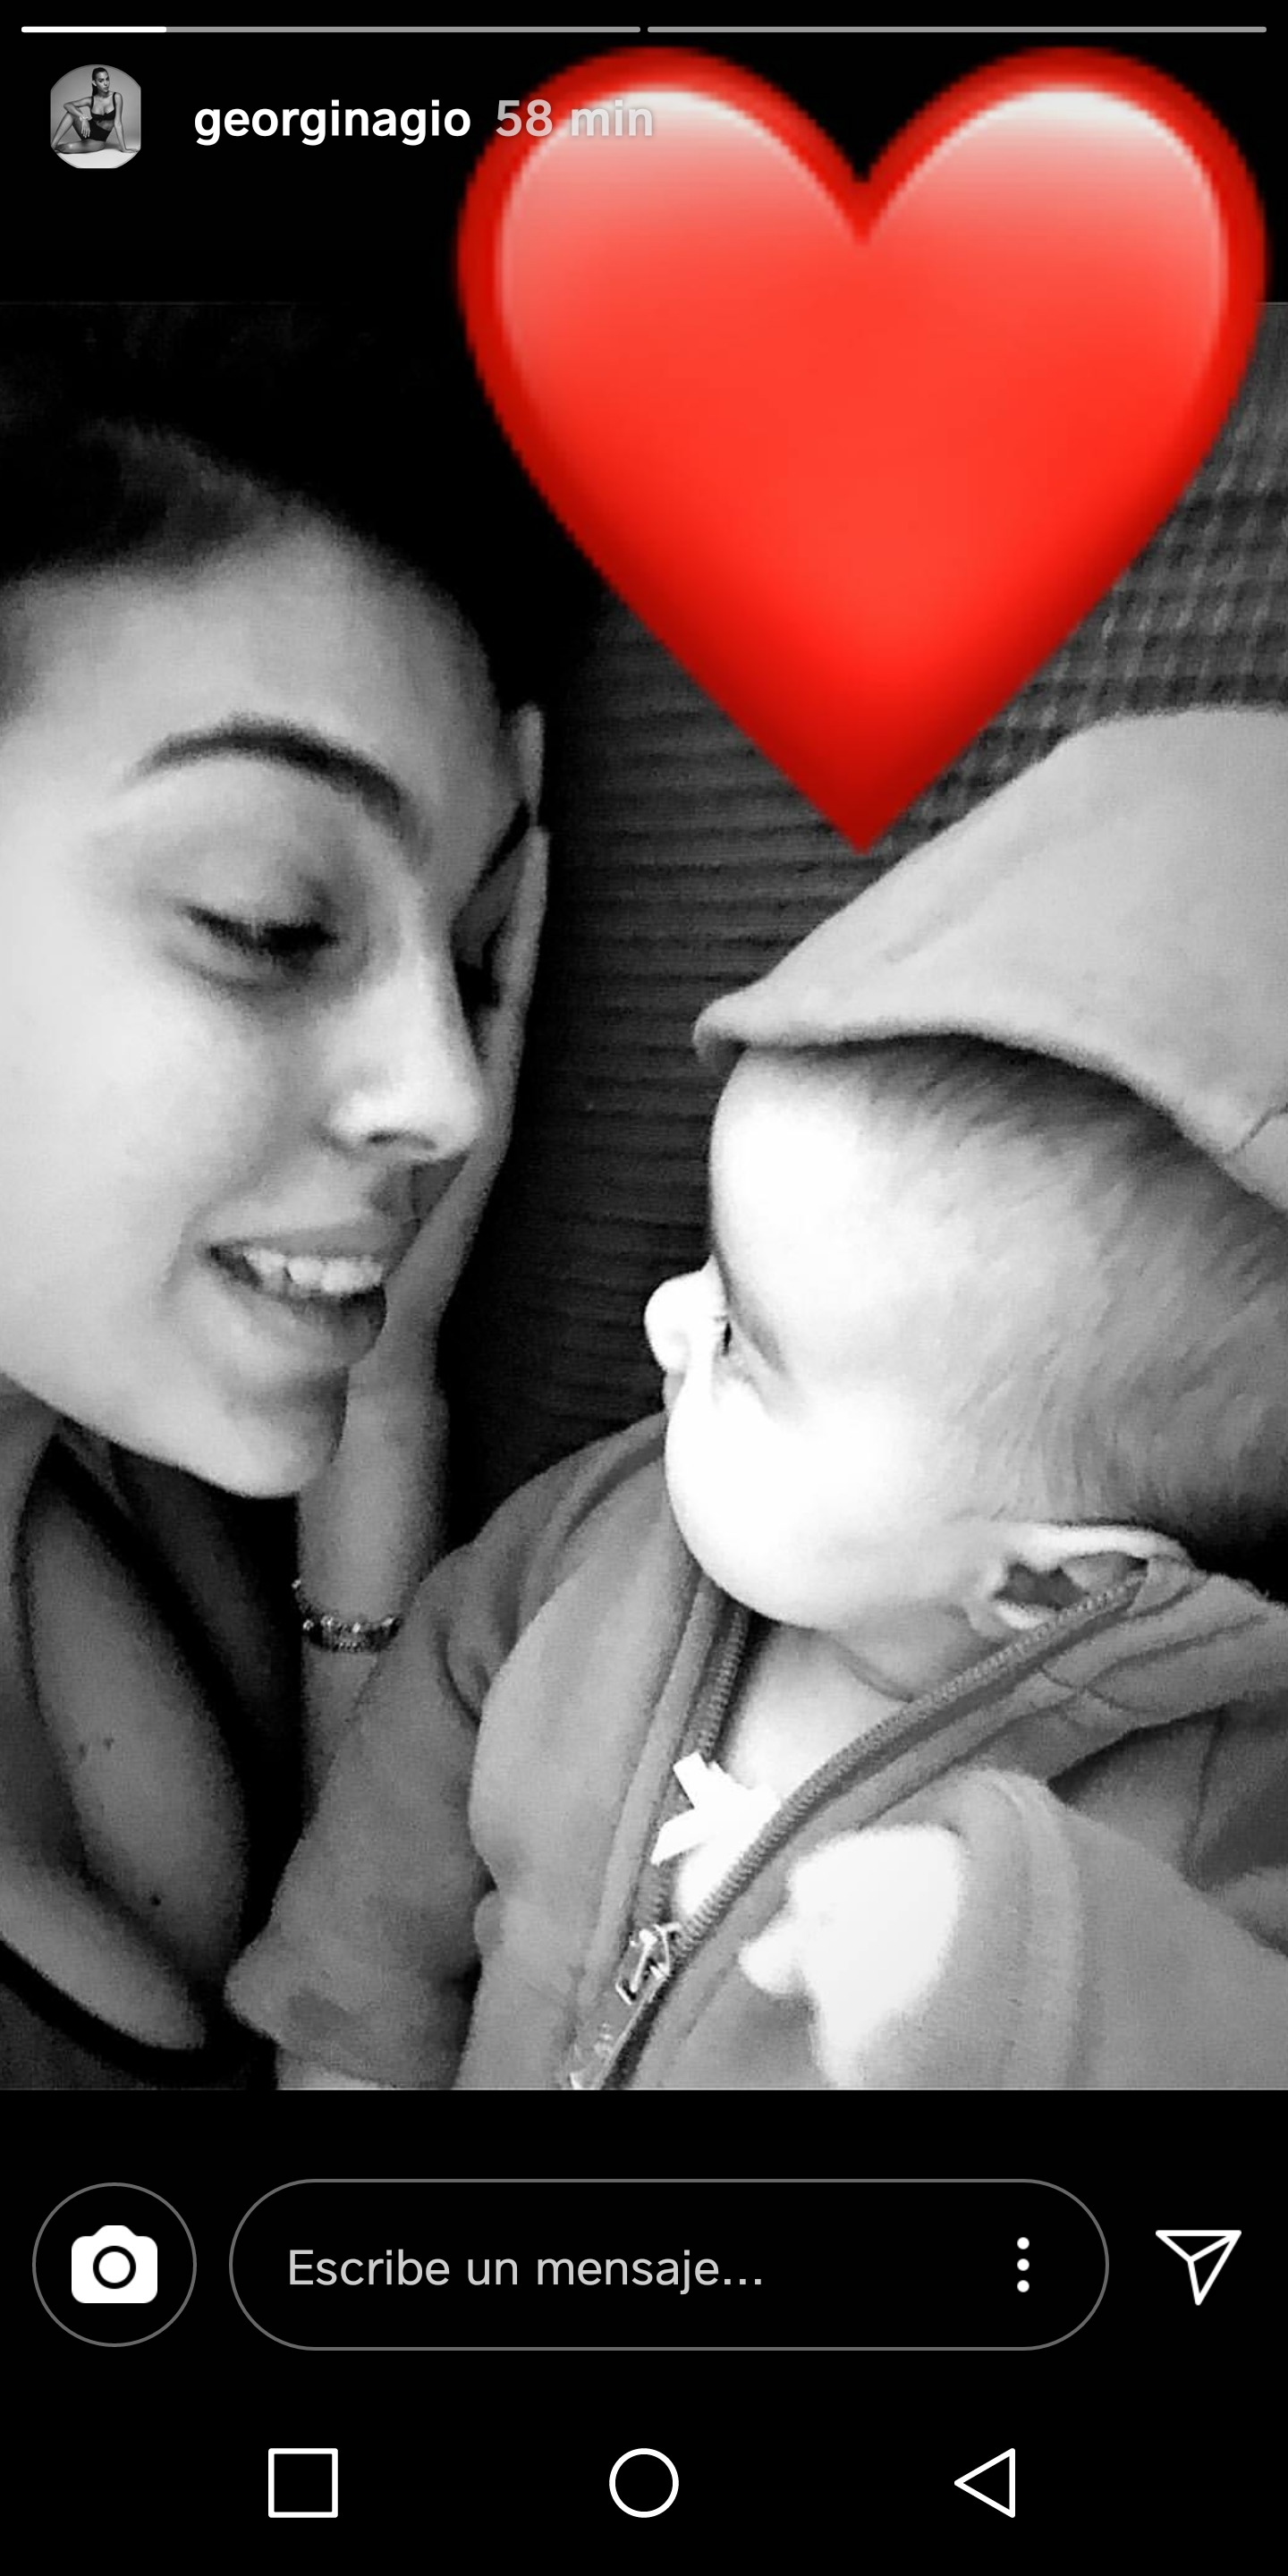 Georgina Rodríguez emociona a Instagram con su última foto junto a su hija Alana Martina